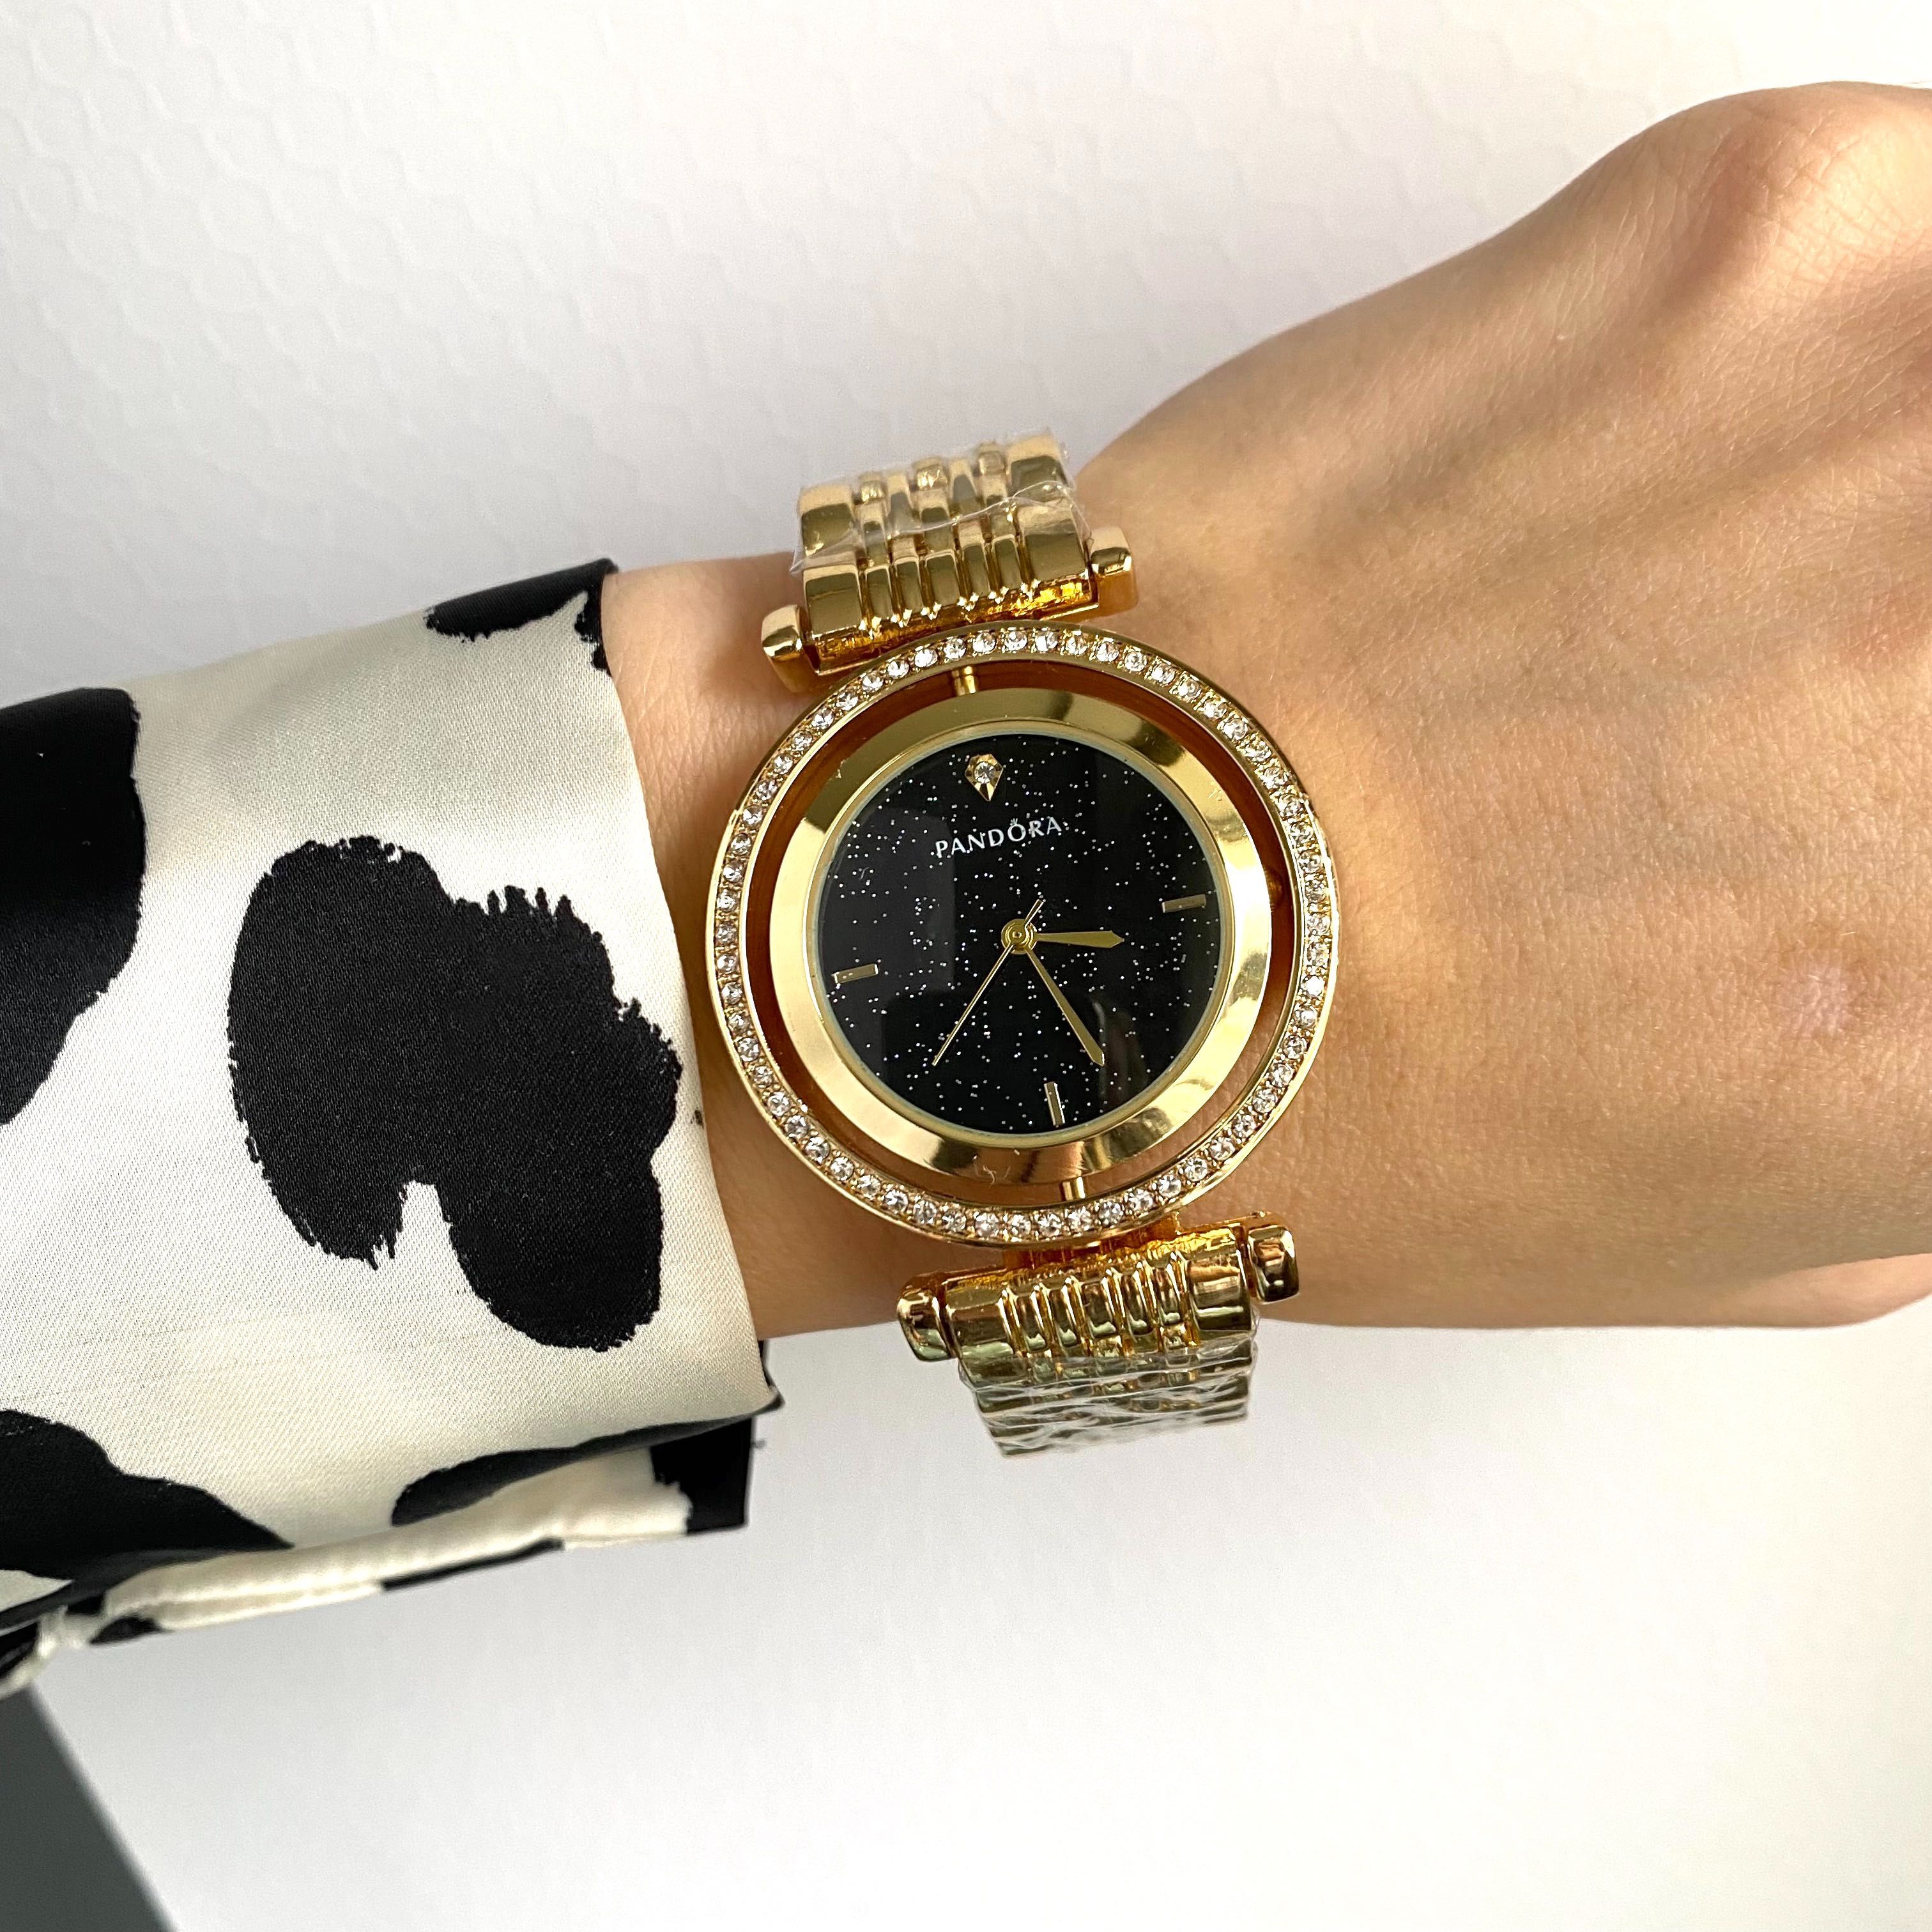 Жіночий годинник у стилі Pandora, женские часы Пандора